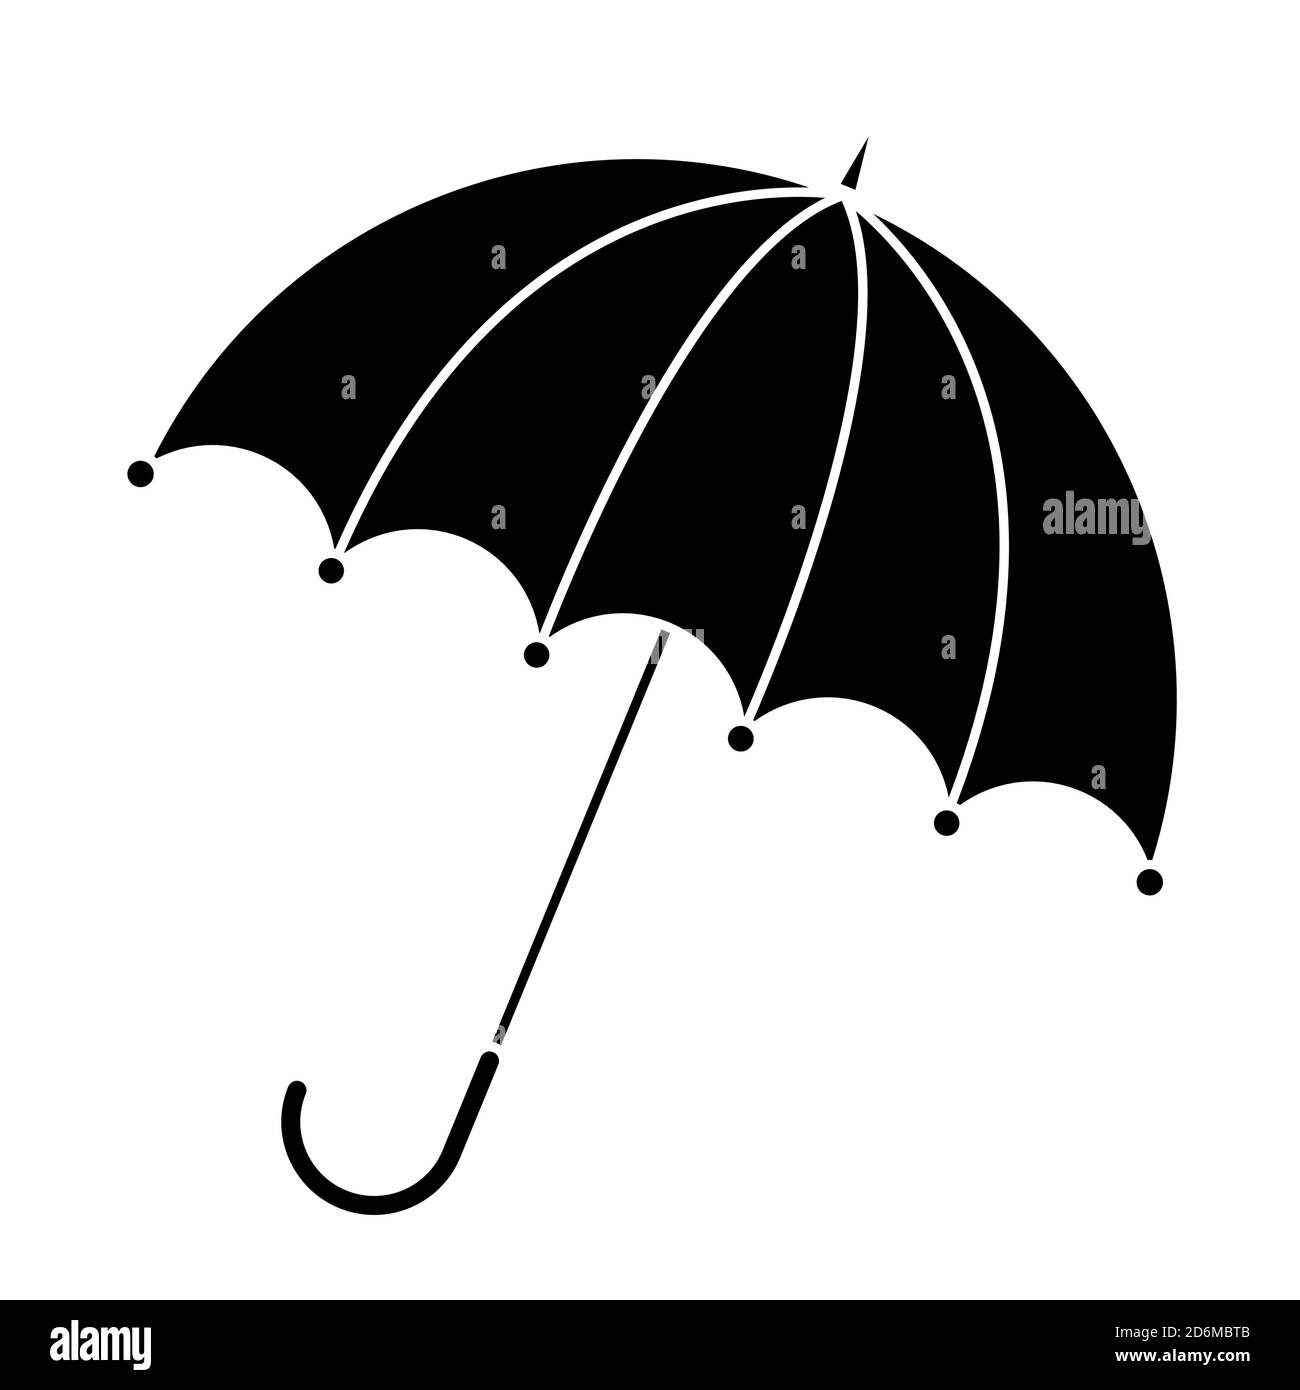 Silueta de paraguas aislada sobre blanco. Icono de sombrilla abierta en blanco y negro. Ilustración del elemento gráfico de otoño de protección contra la lluvia. Vector otoñal symb Ilustración del Vector